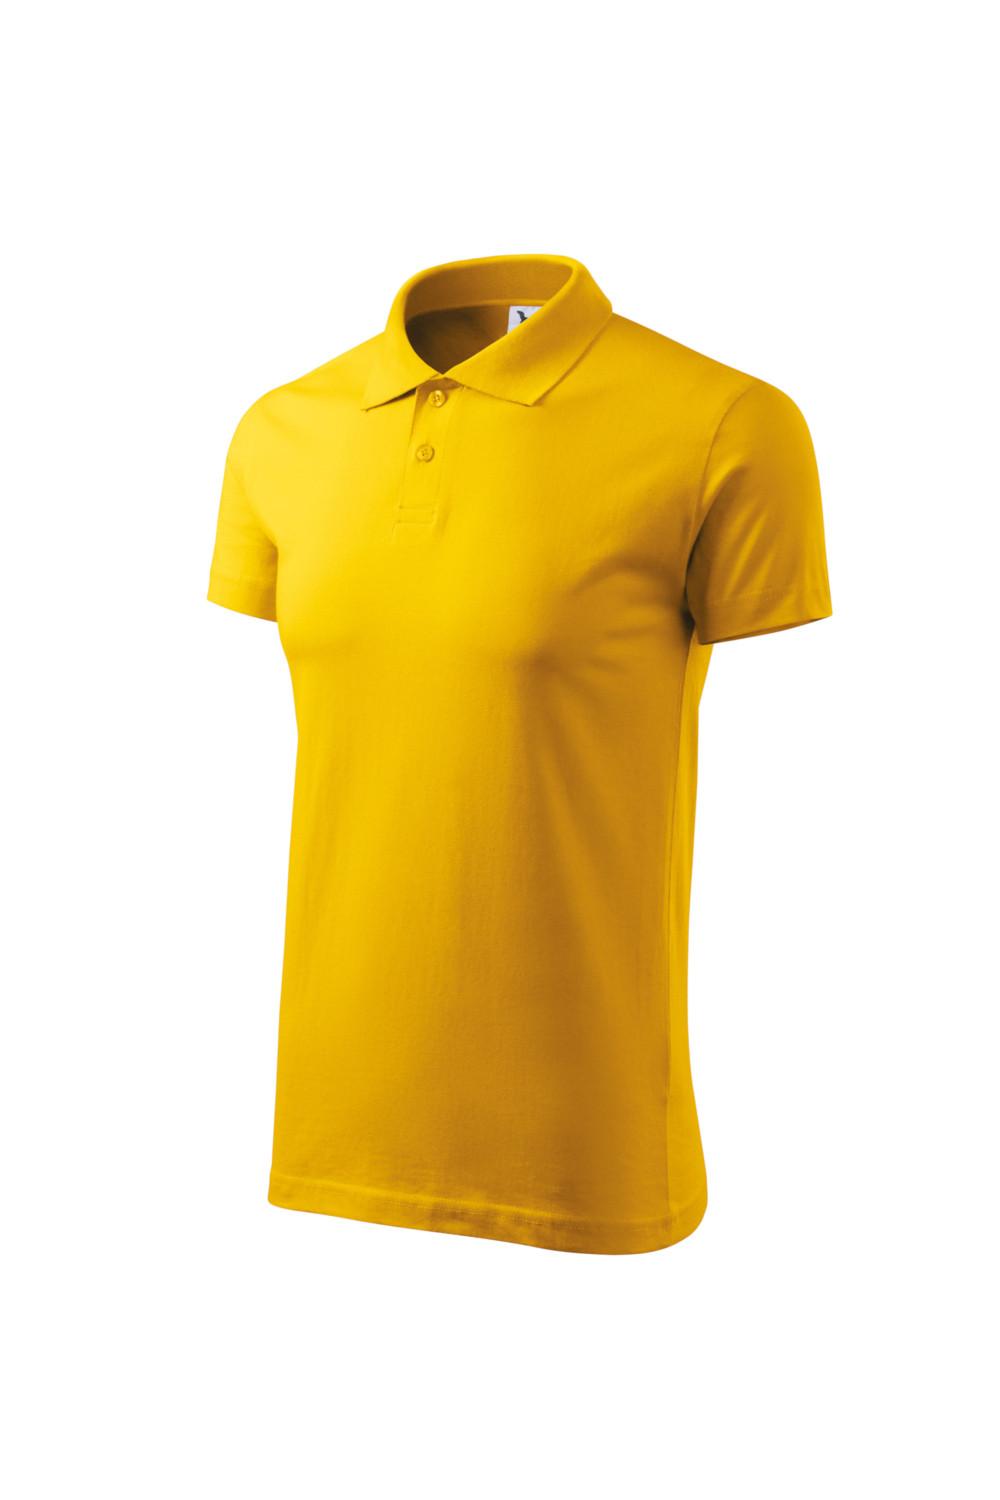 Koszulka Polo męska bawełna/poliester 203 polo żółty